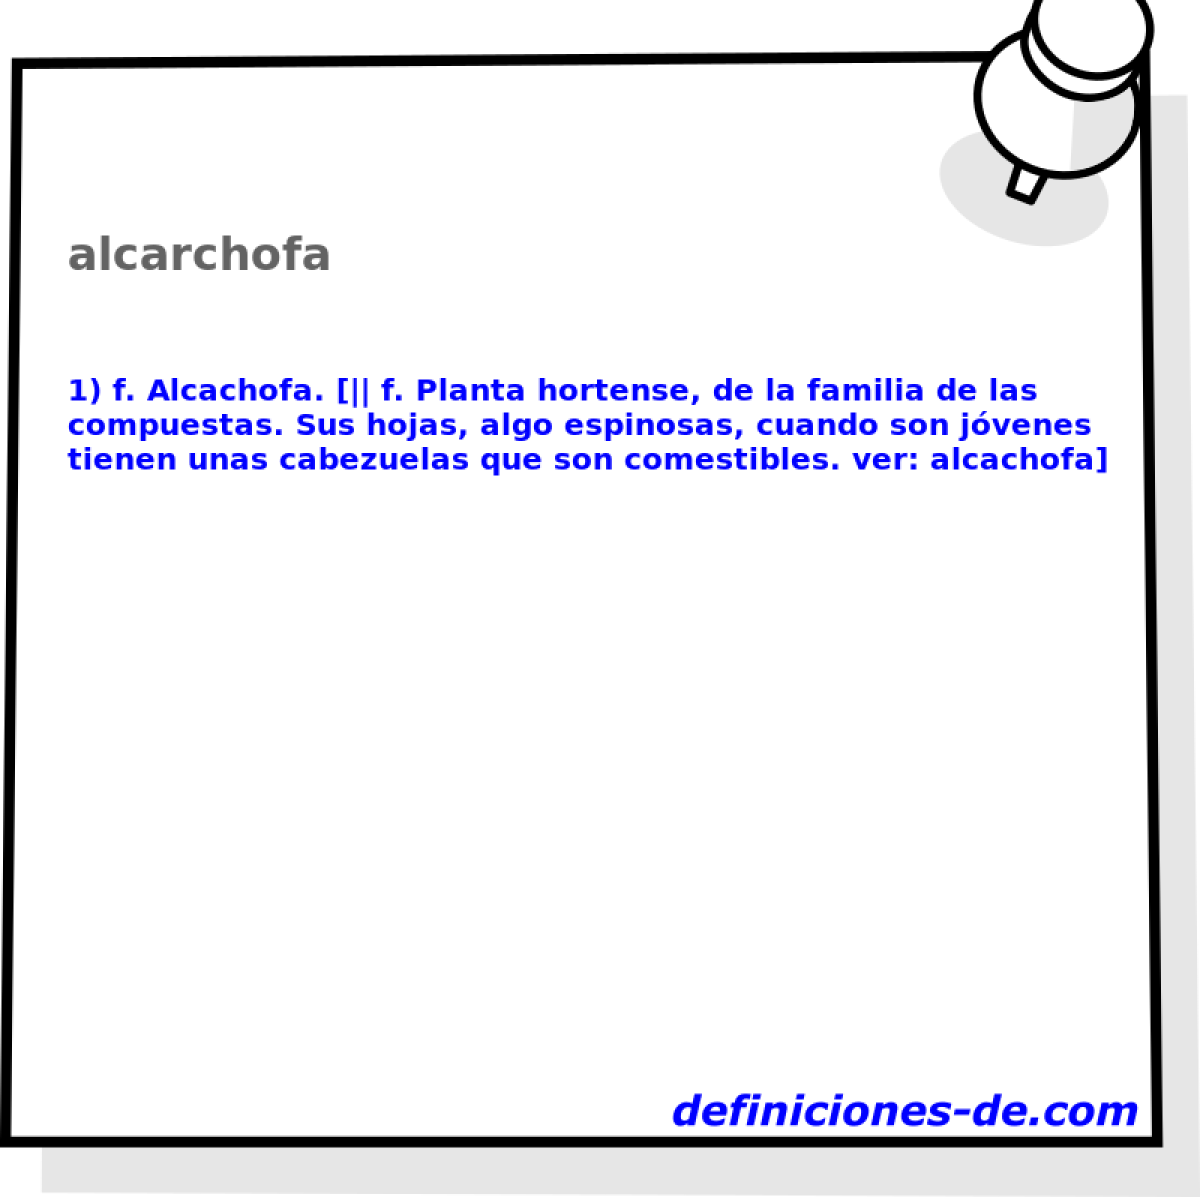 alcarchofa 